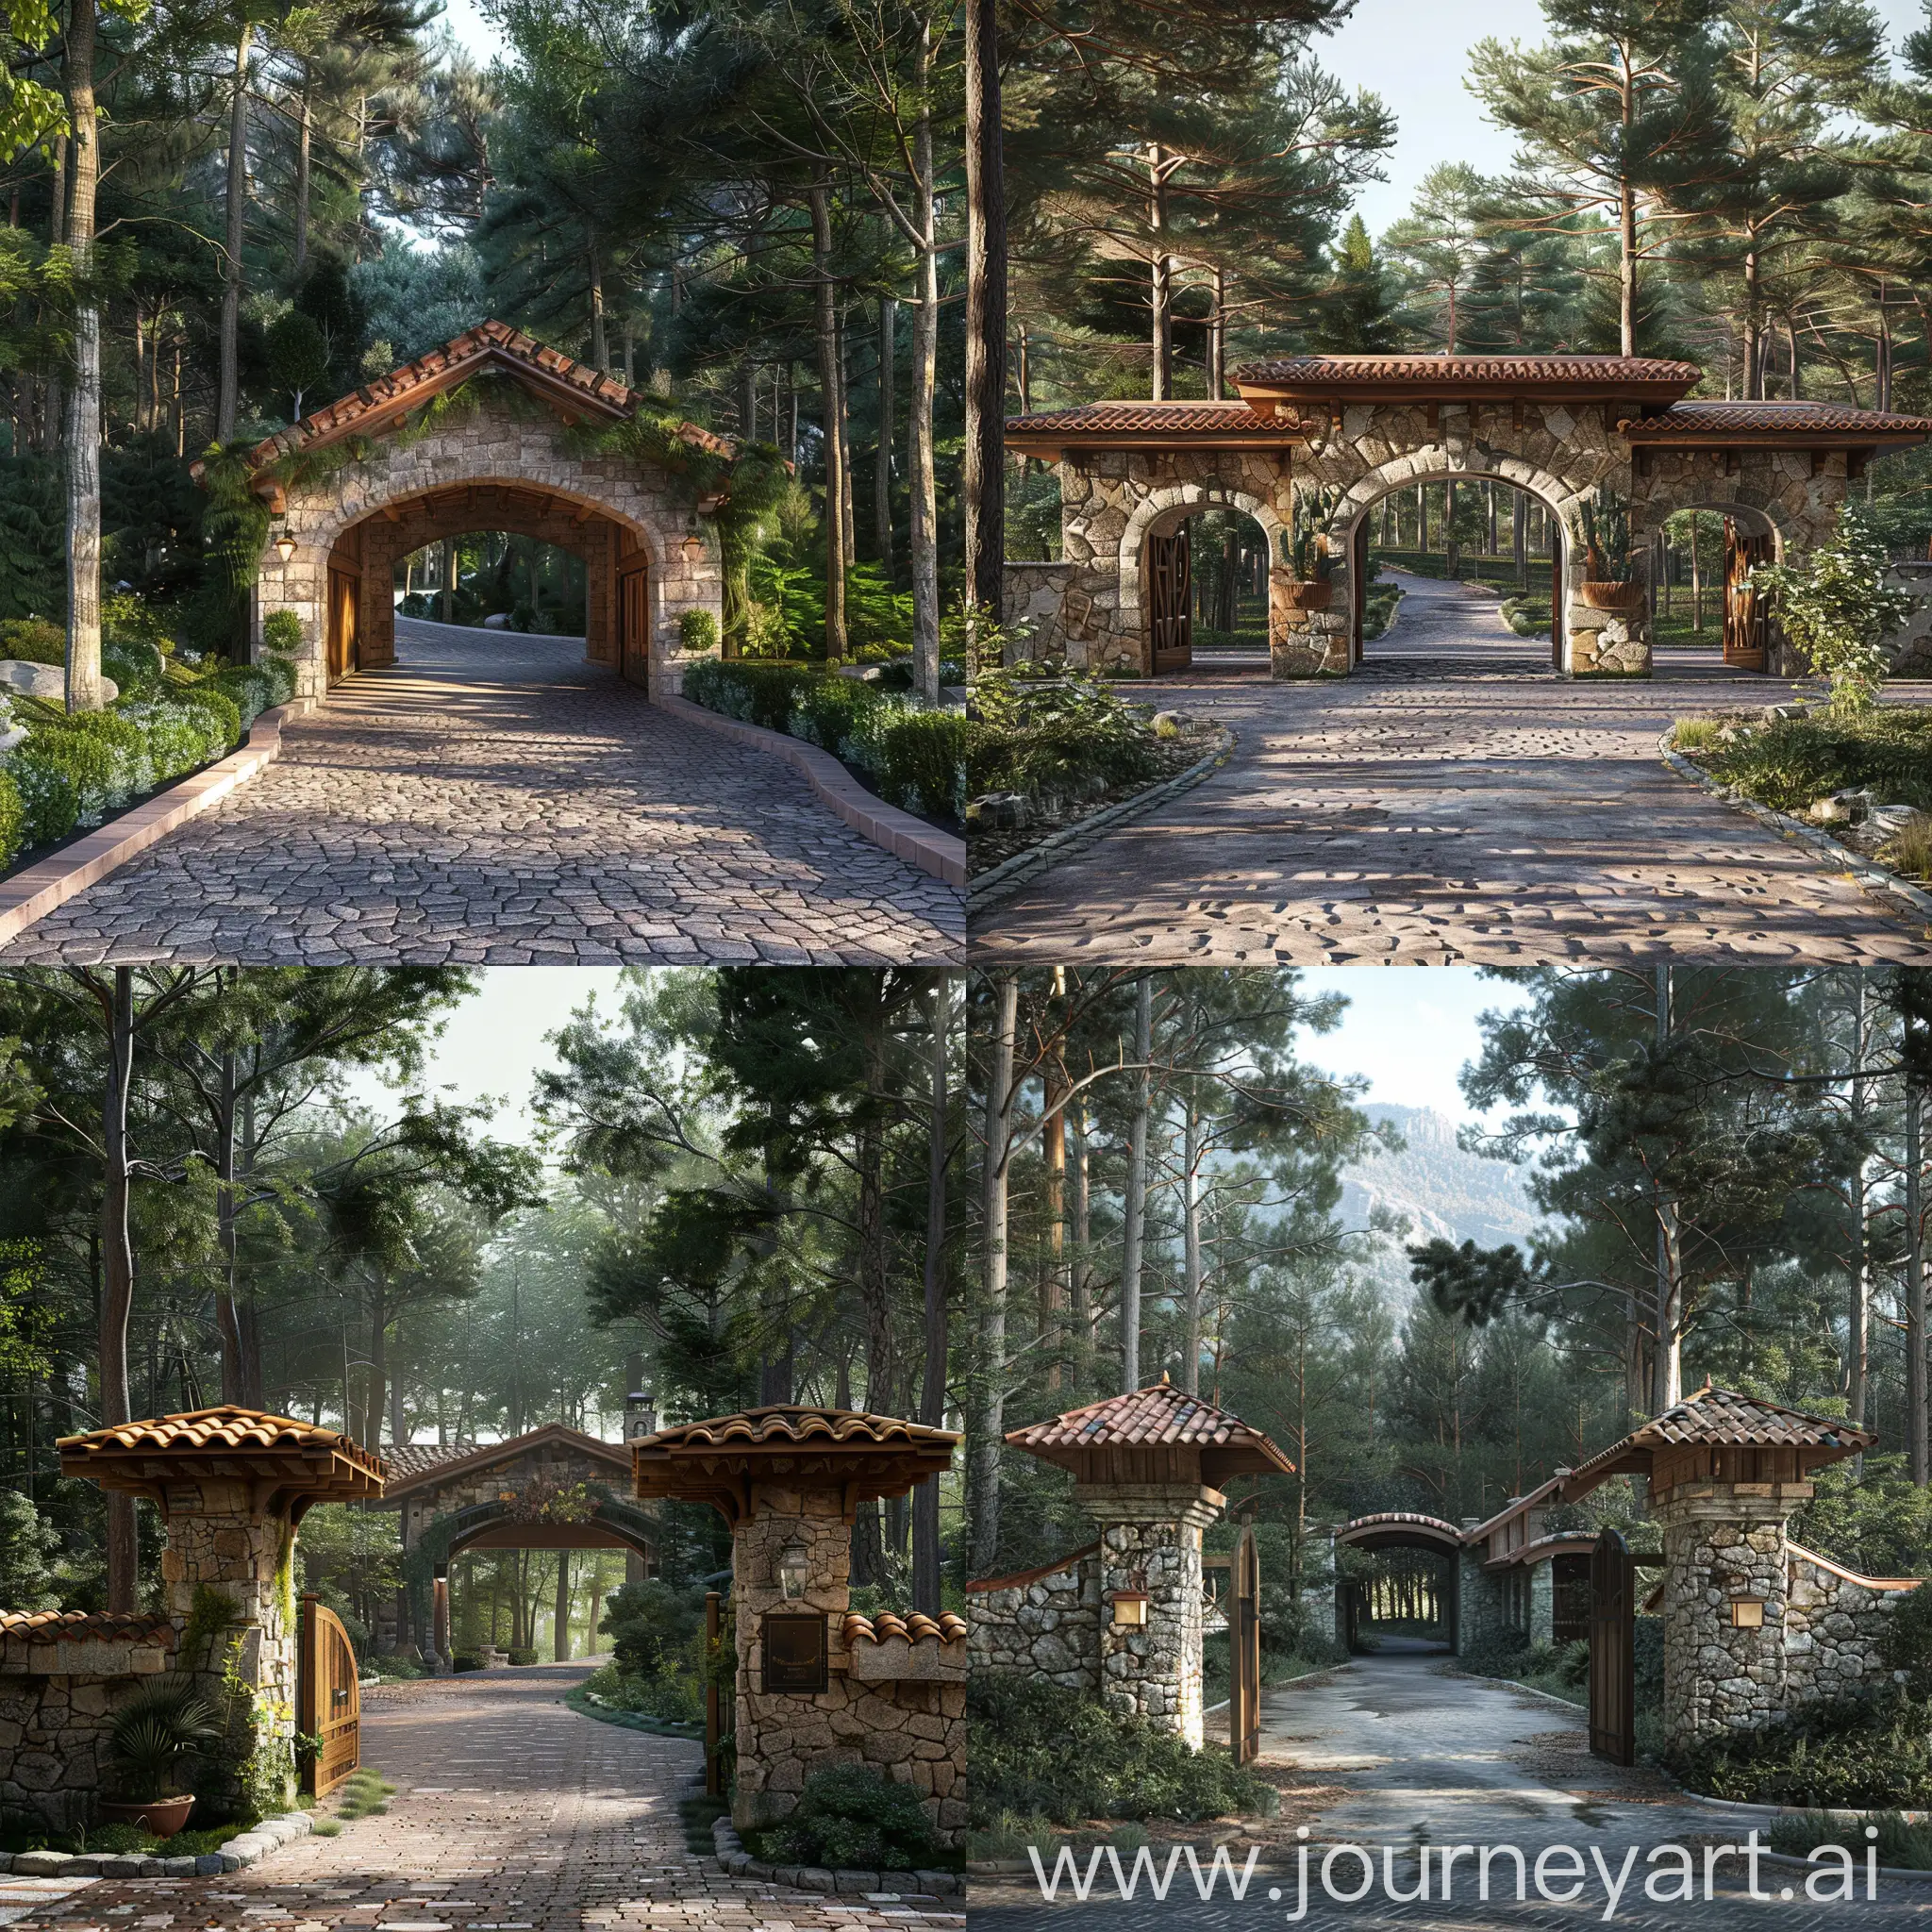 Haz un render realista de una entrada vehicular en el bosque con un estilo mezclado entre toscana italiana y hacienda mexicana, con piedra y madera